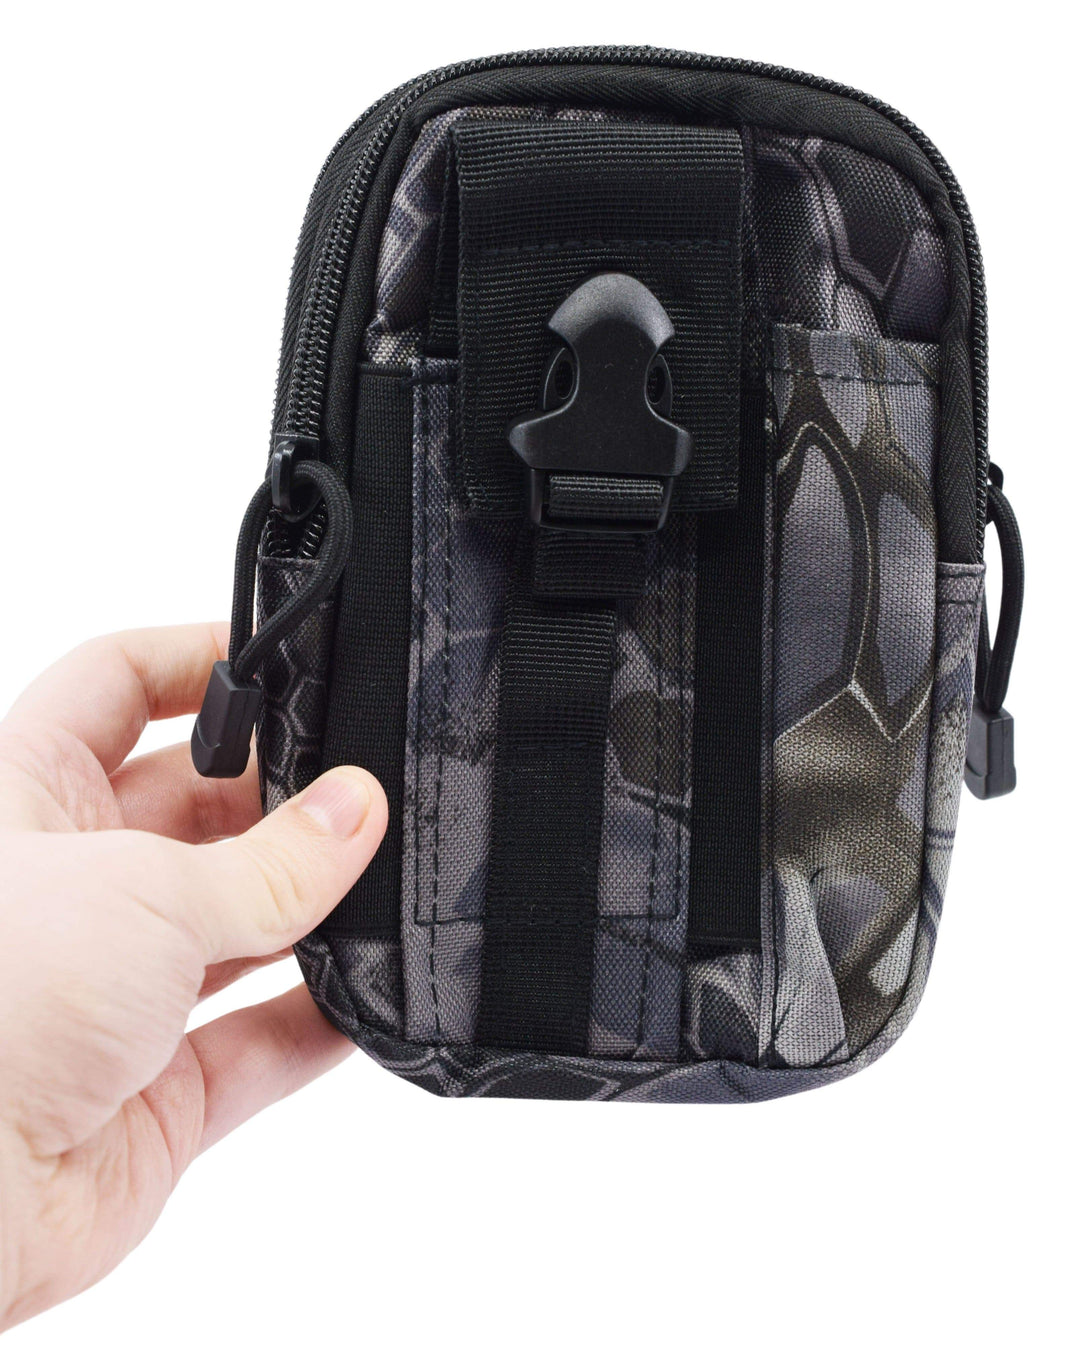 Teak Tuning Large Fingerboard Travel/Carry Bag - Black Patterned